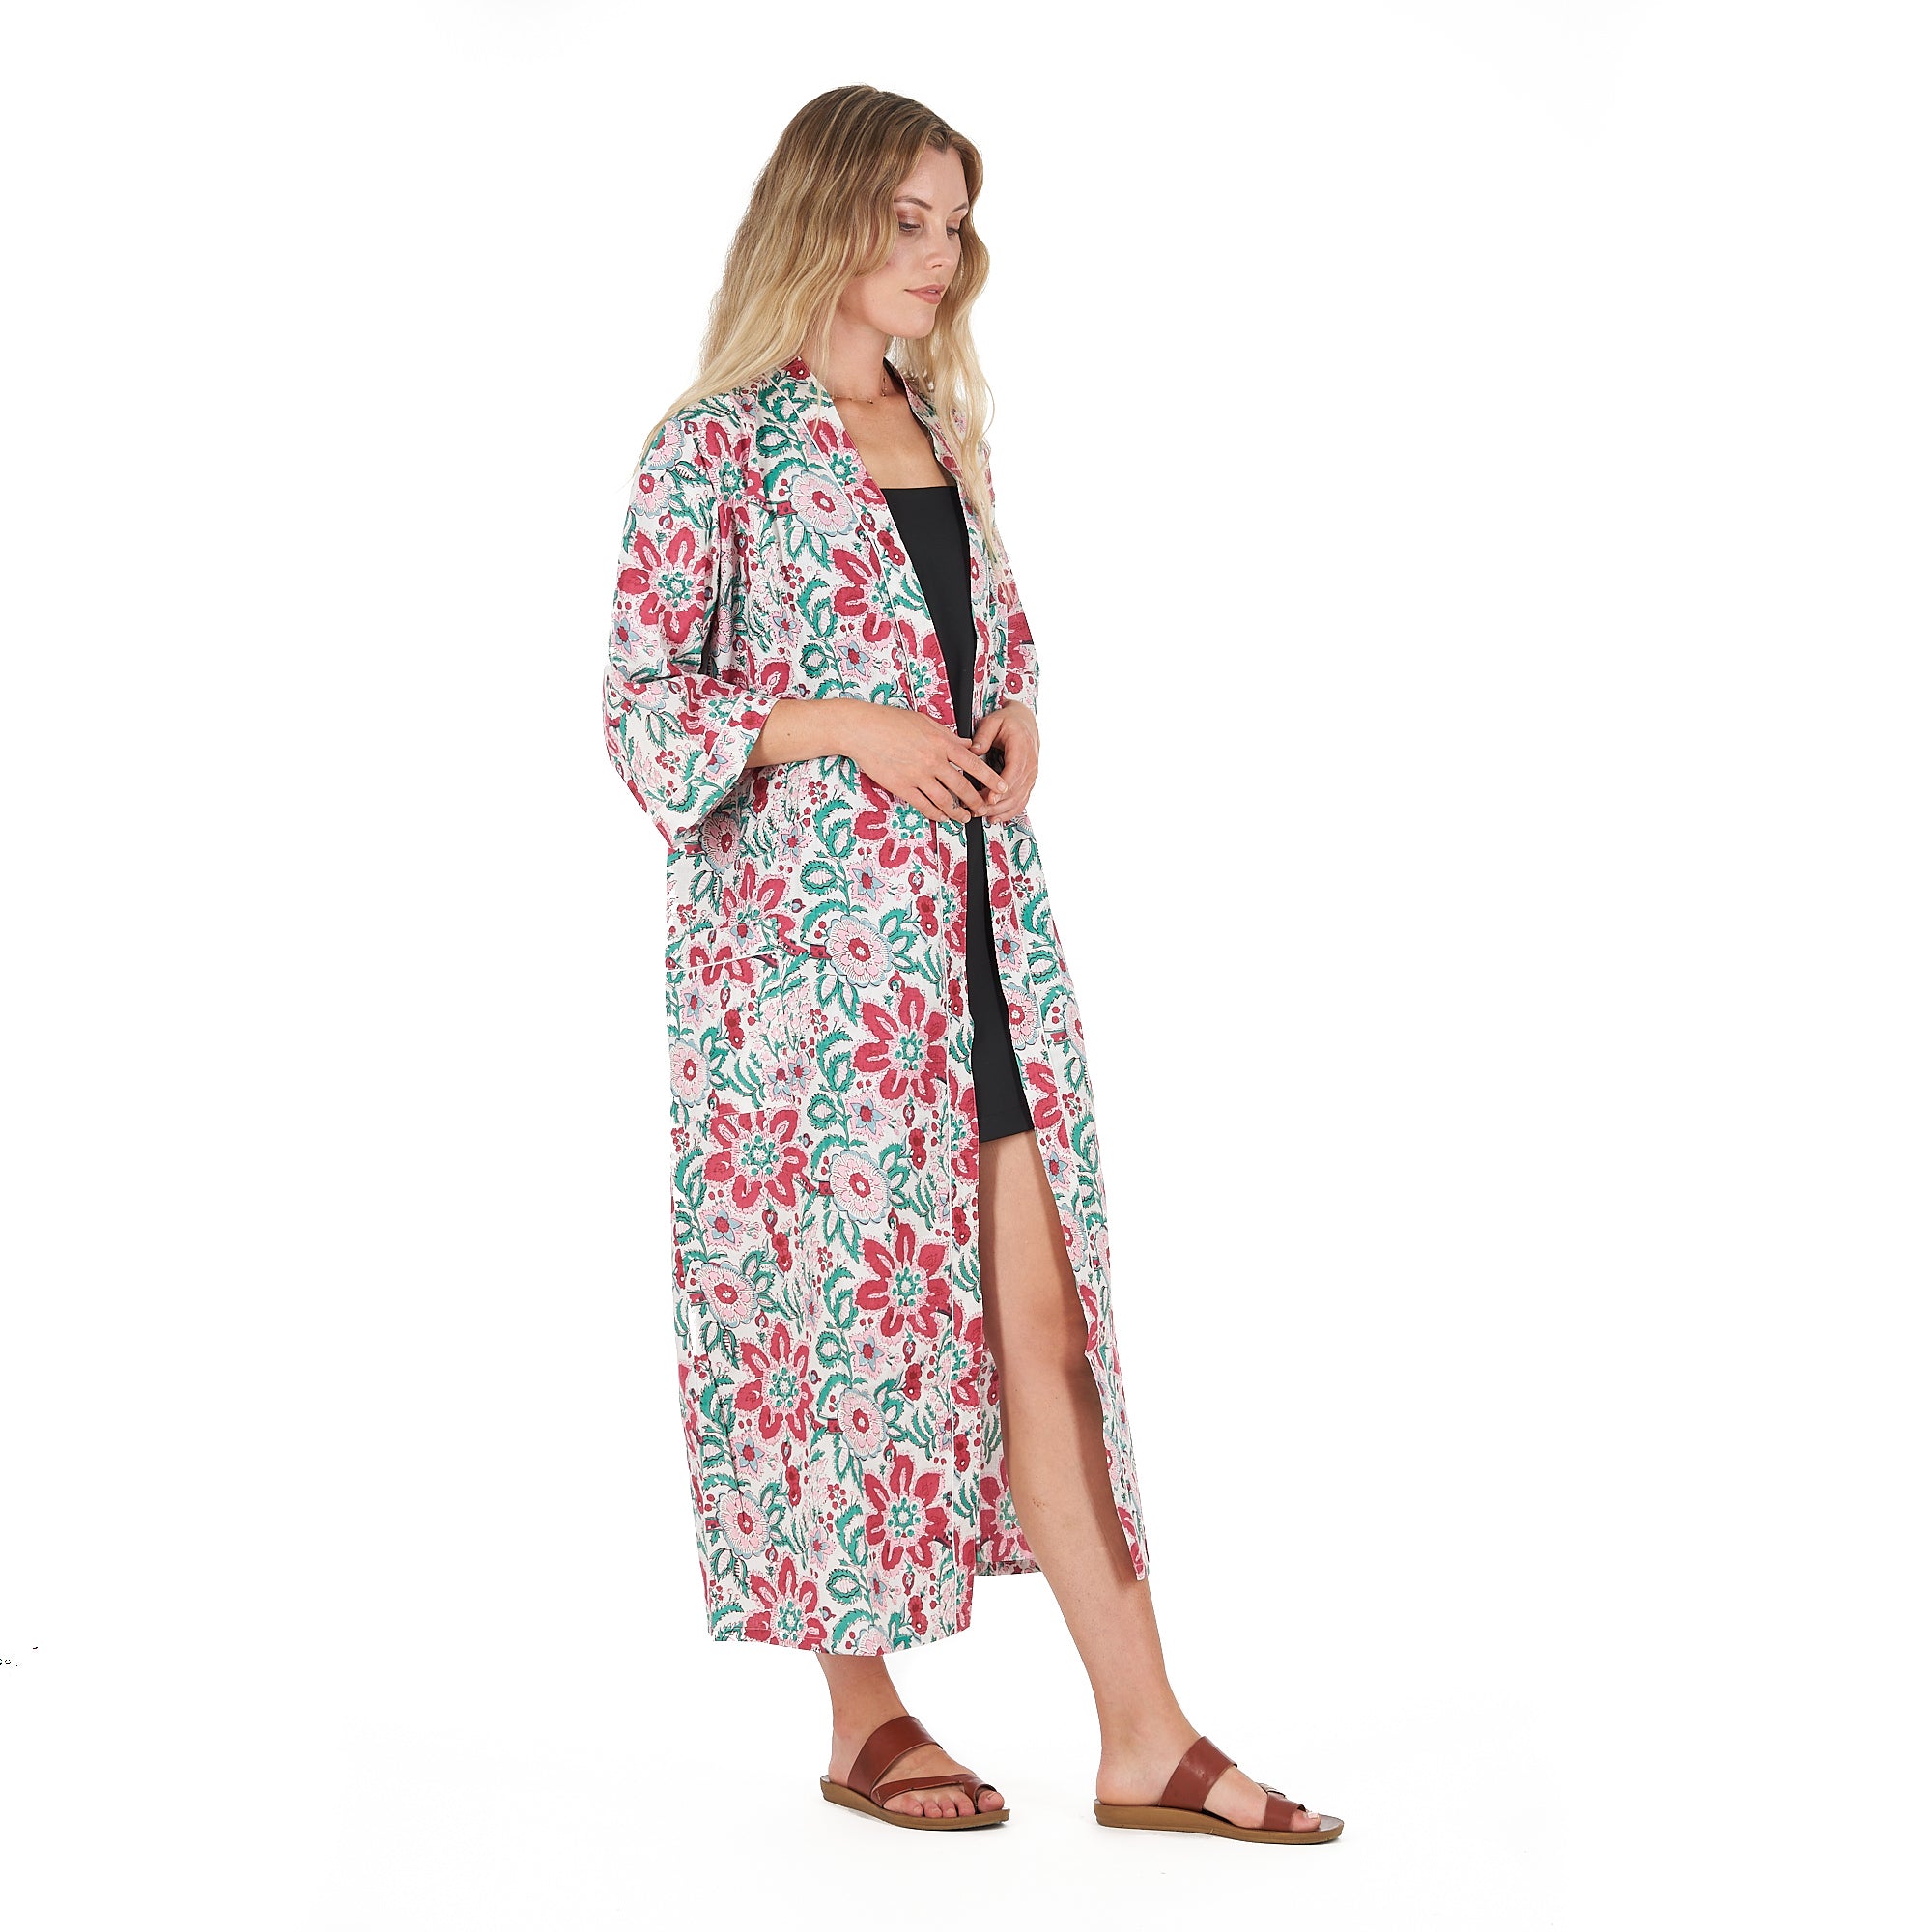 'Cozy Couture' 100% Cotton Kimono Robe